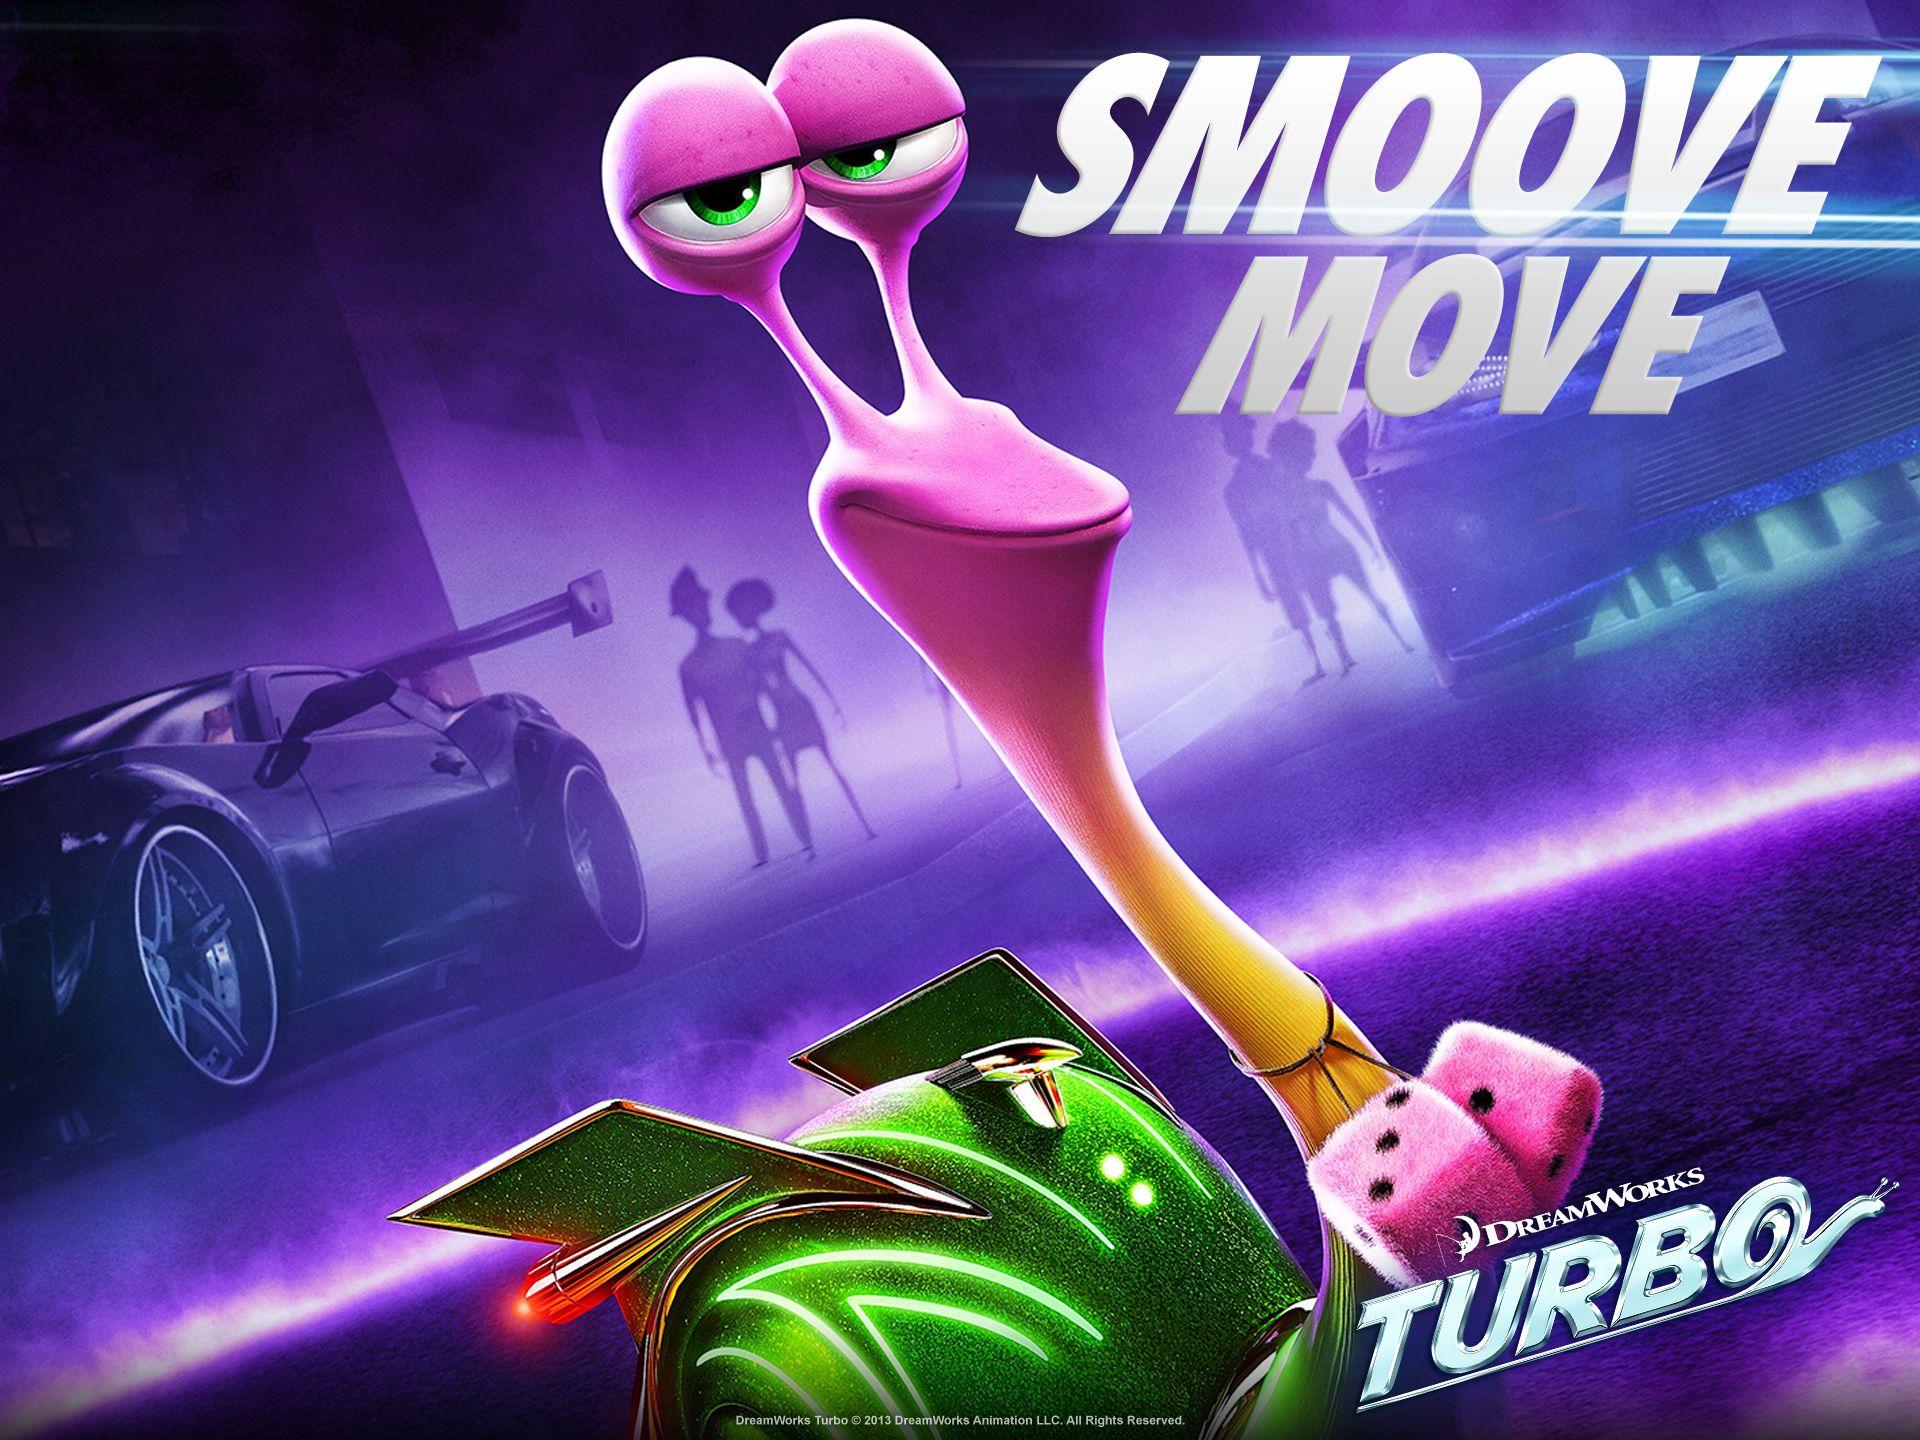 Turbo Movie Smoove Move Wallpaper